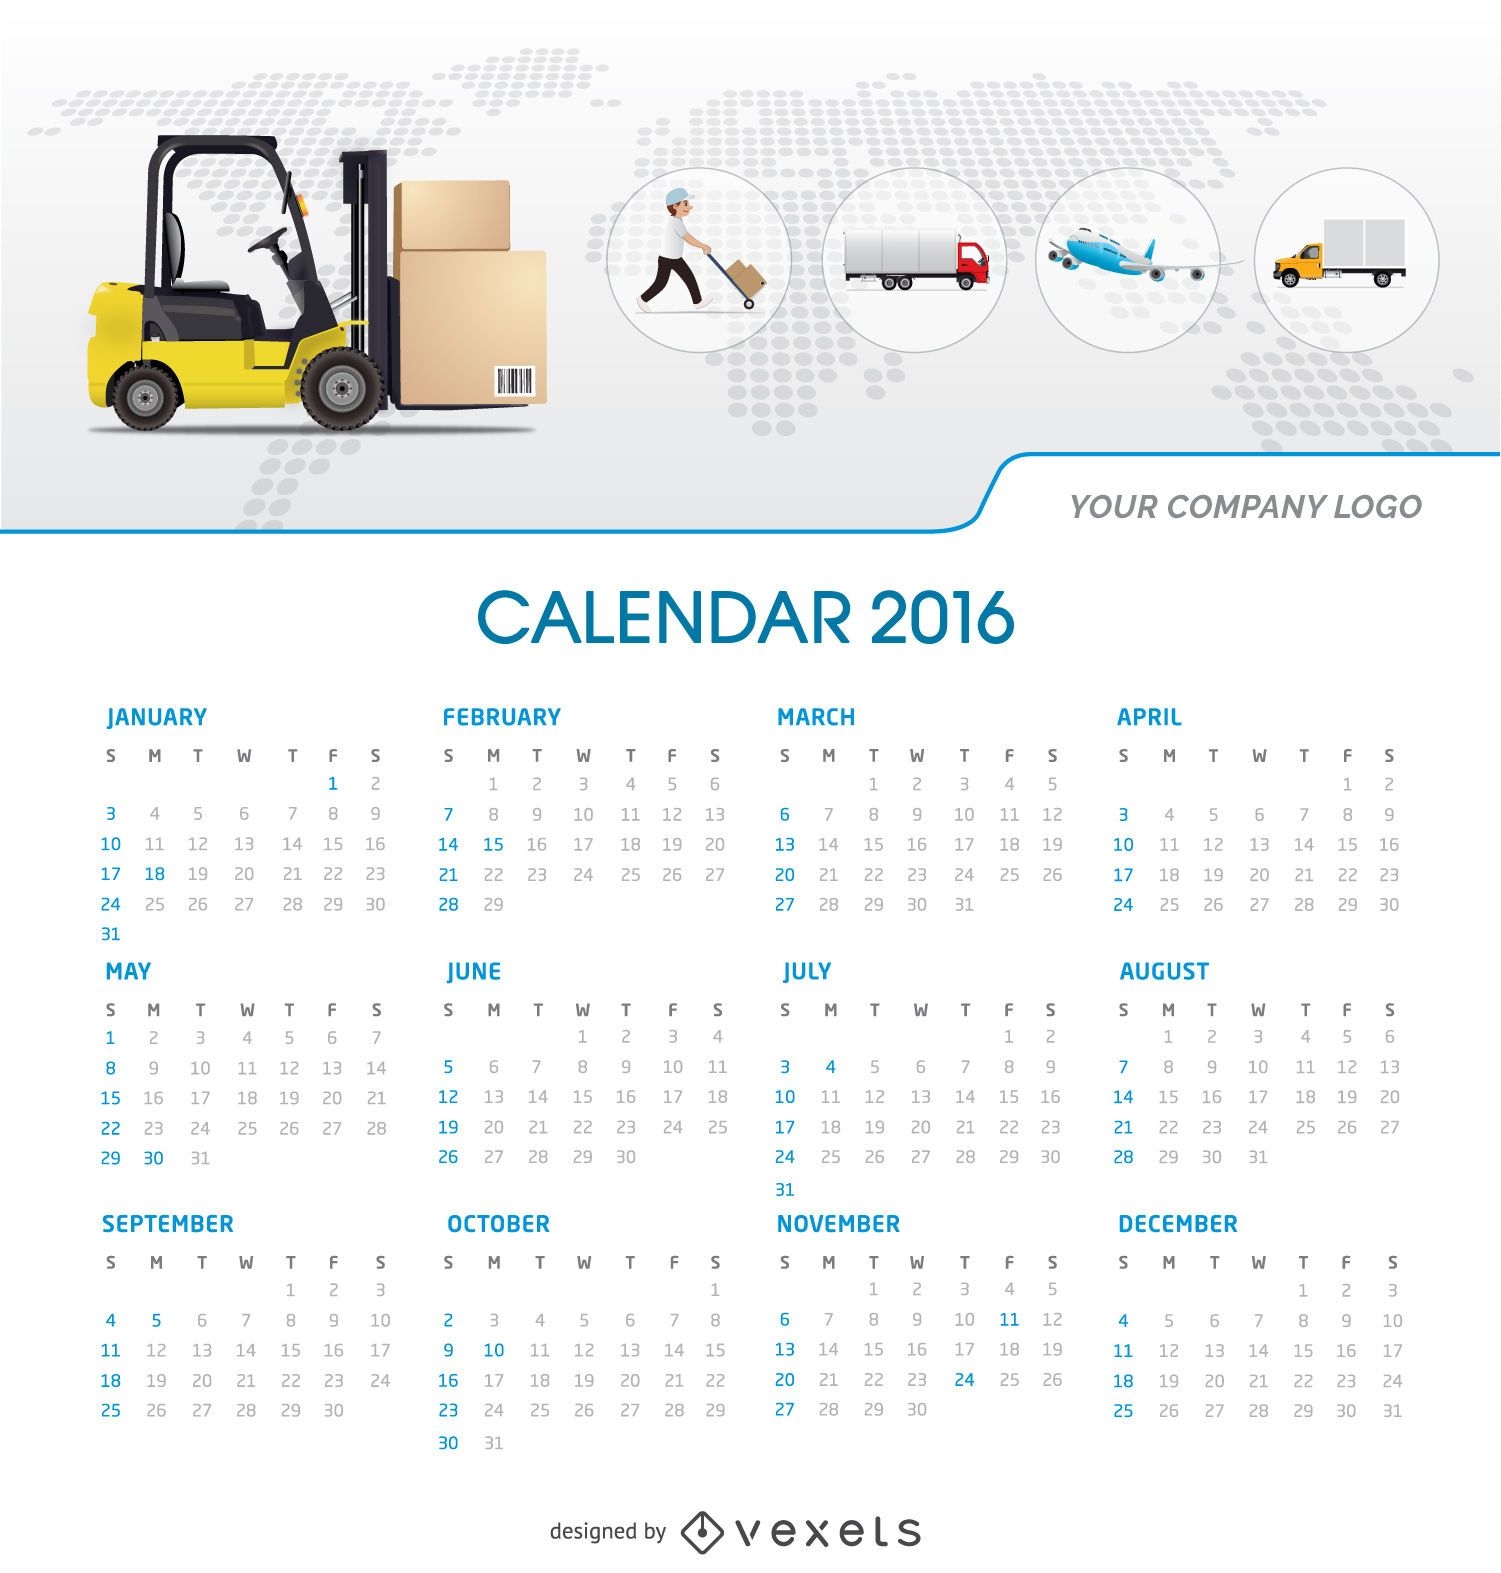 Calendario logístico 2016 tempalte